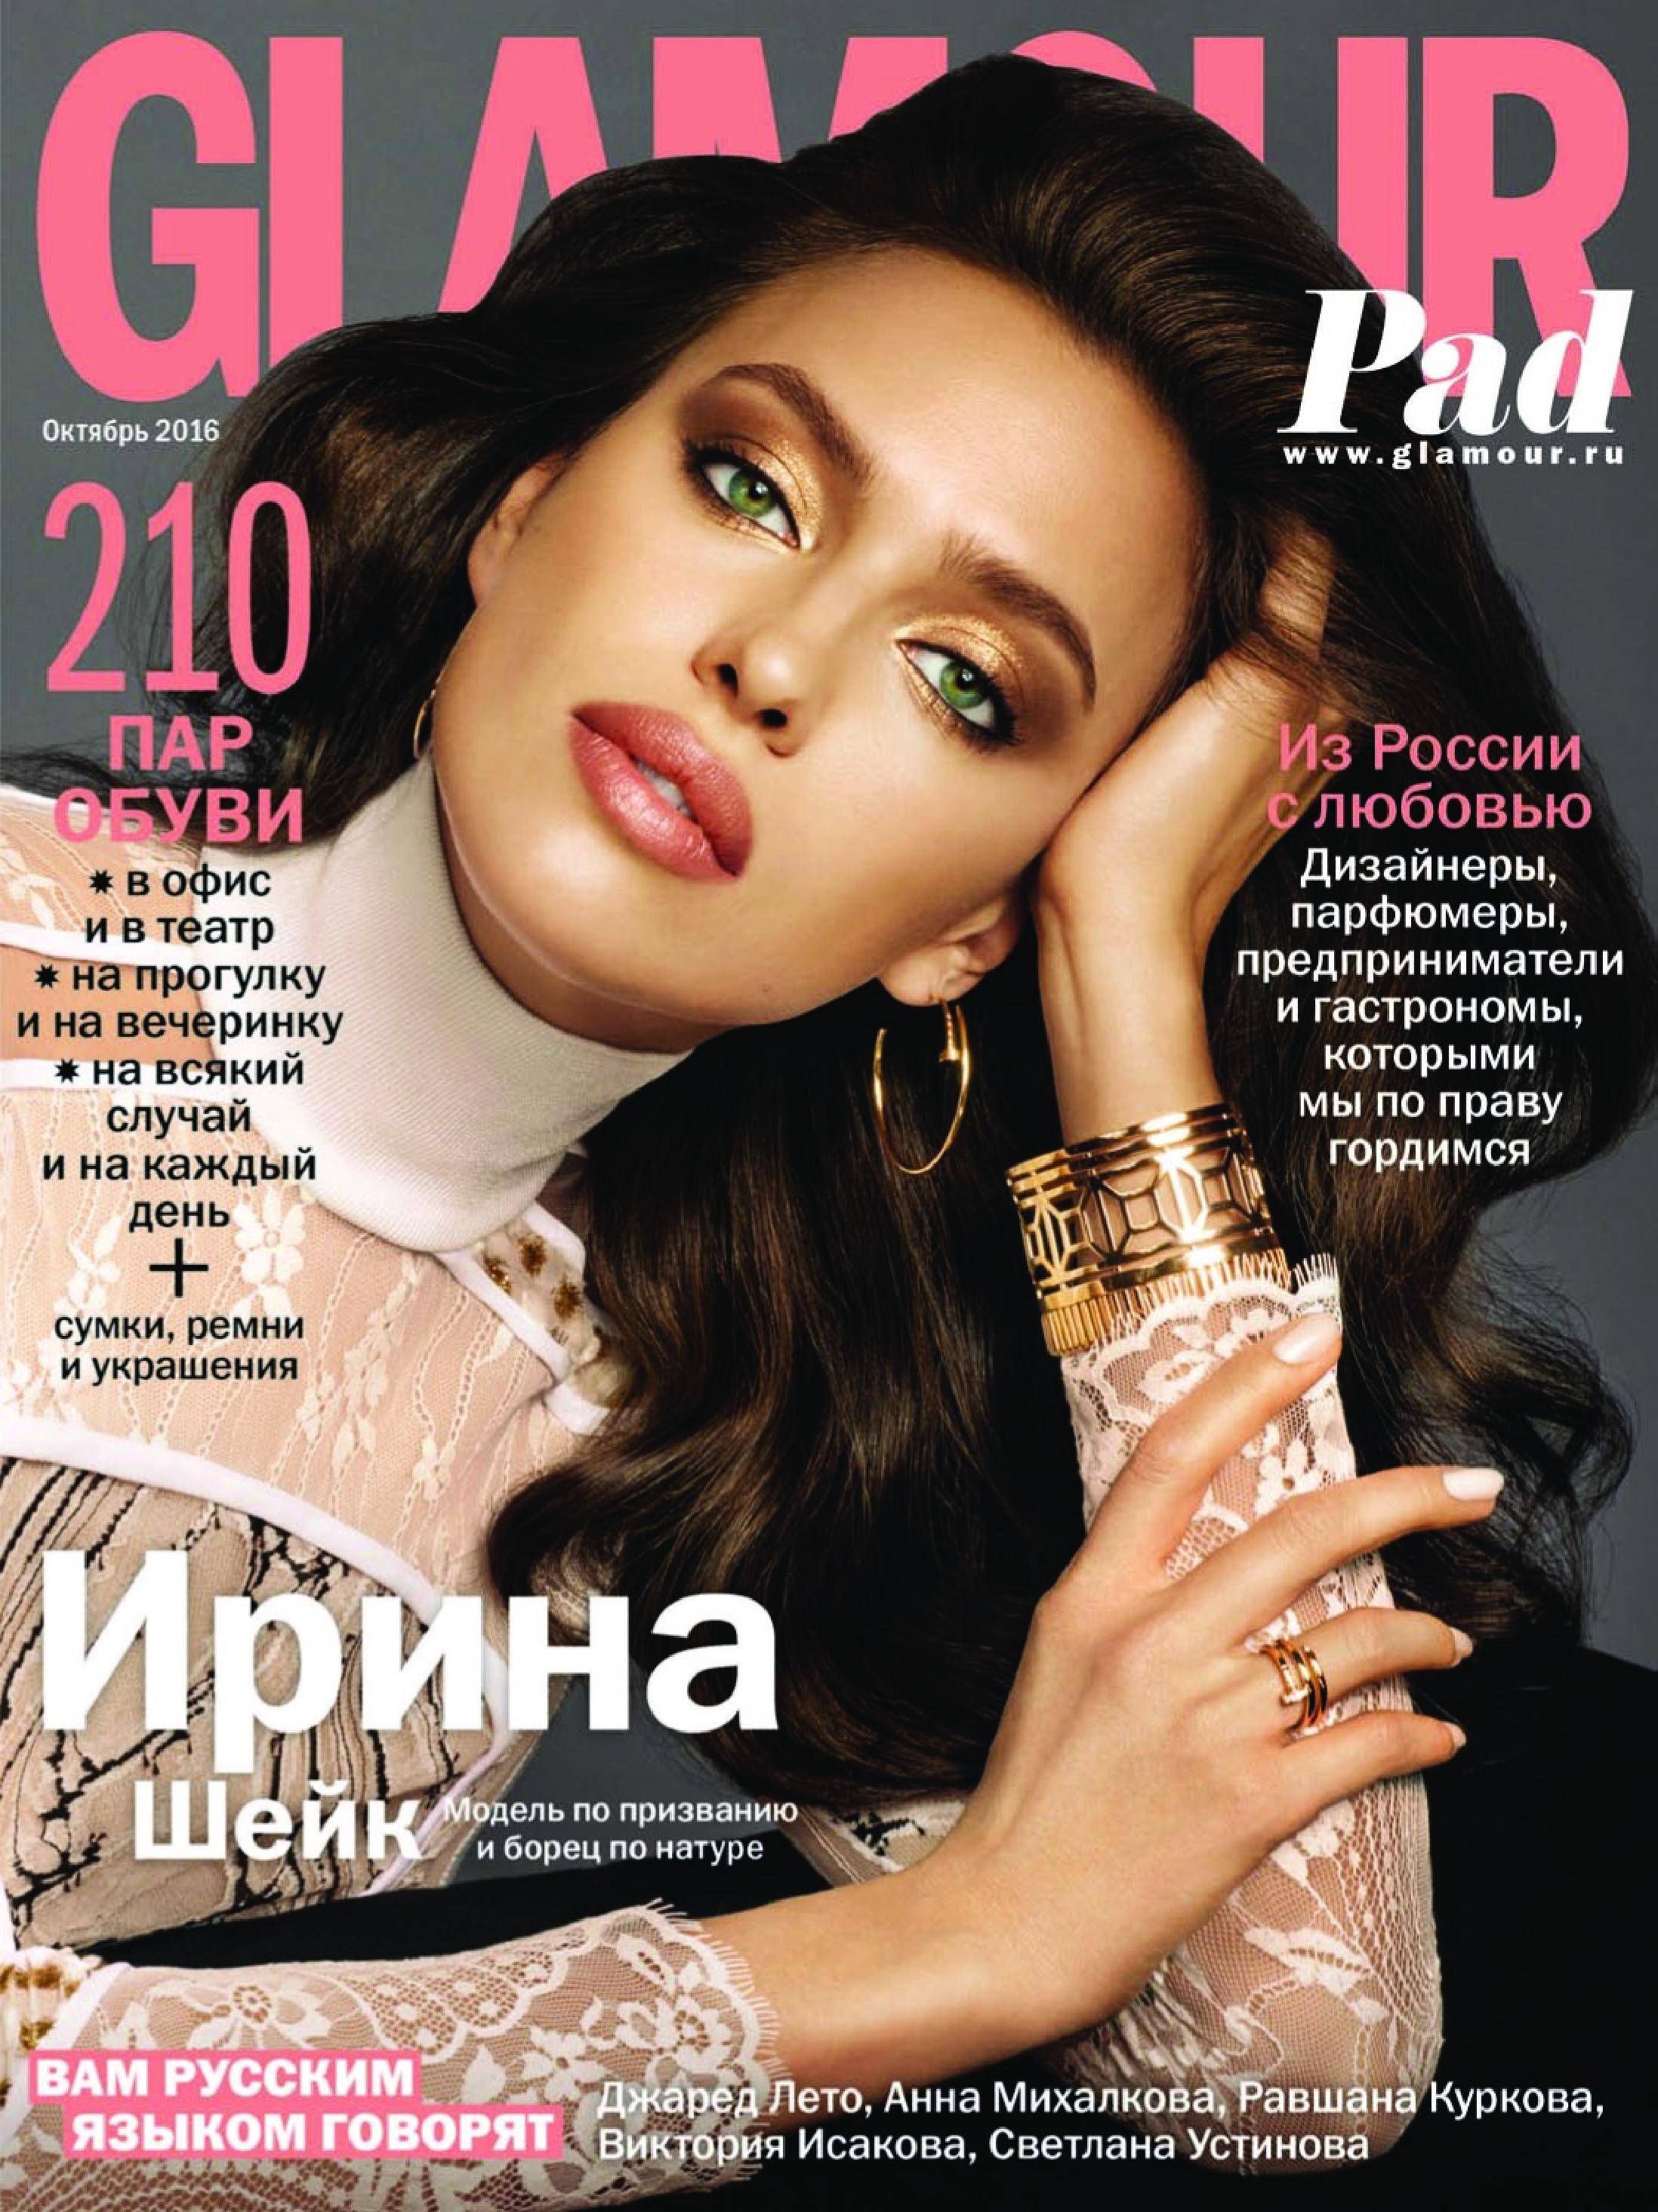 Обложки русских журналов